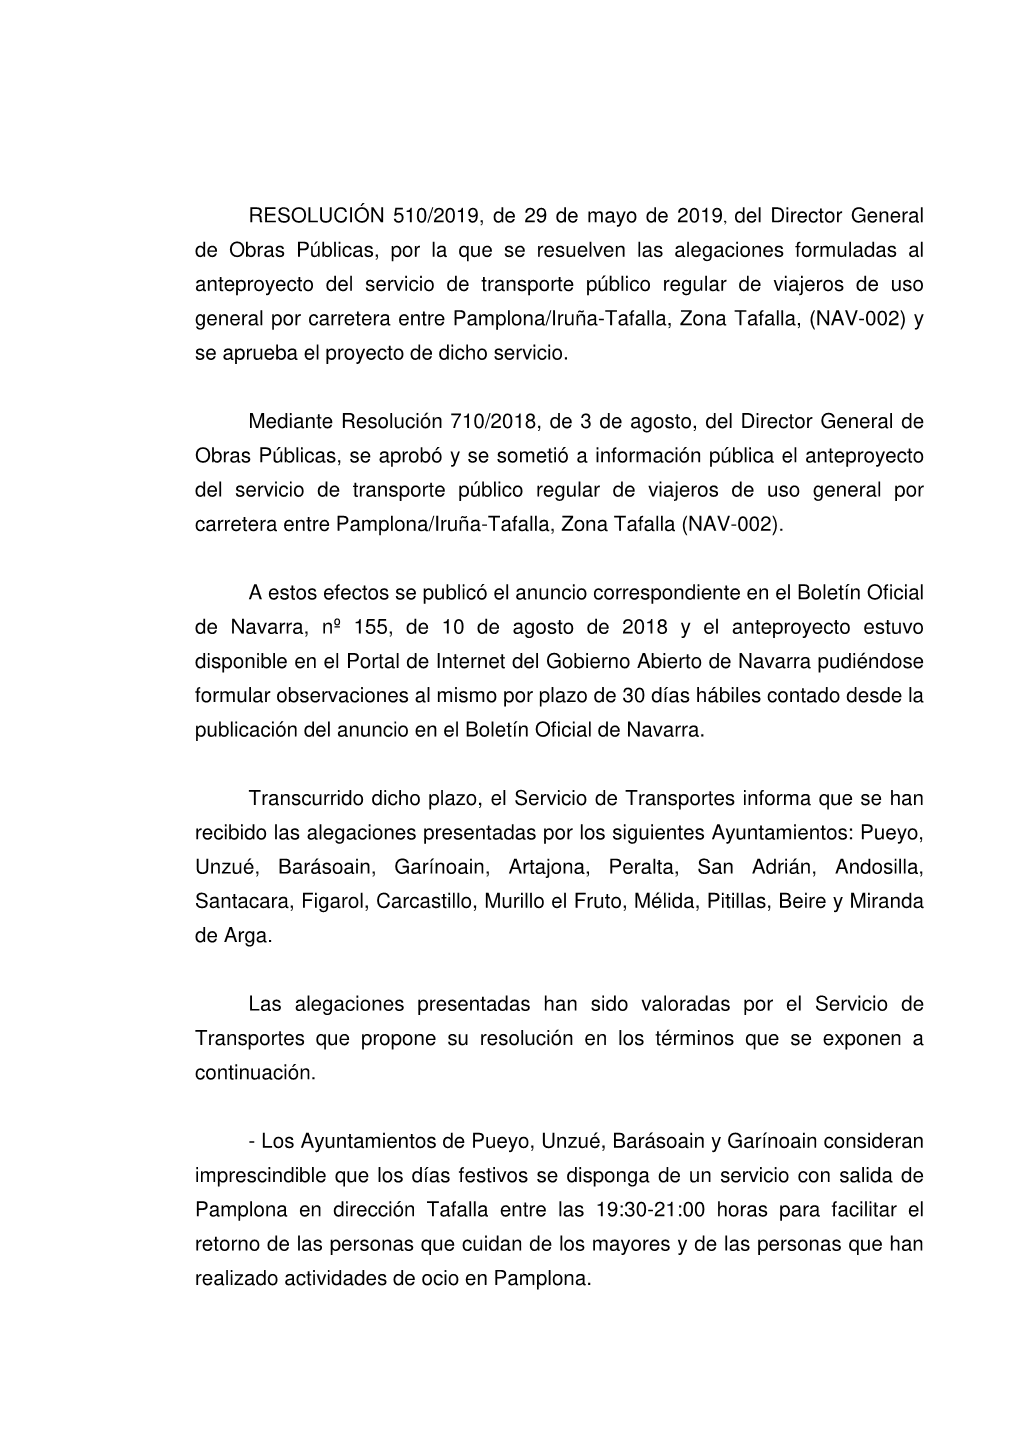 Resolución Aprobación Proyecto Pamplona Tafalla